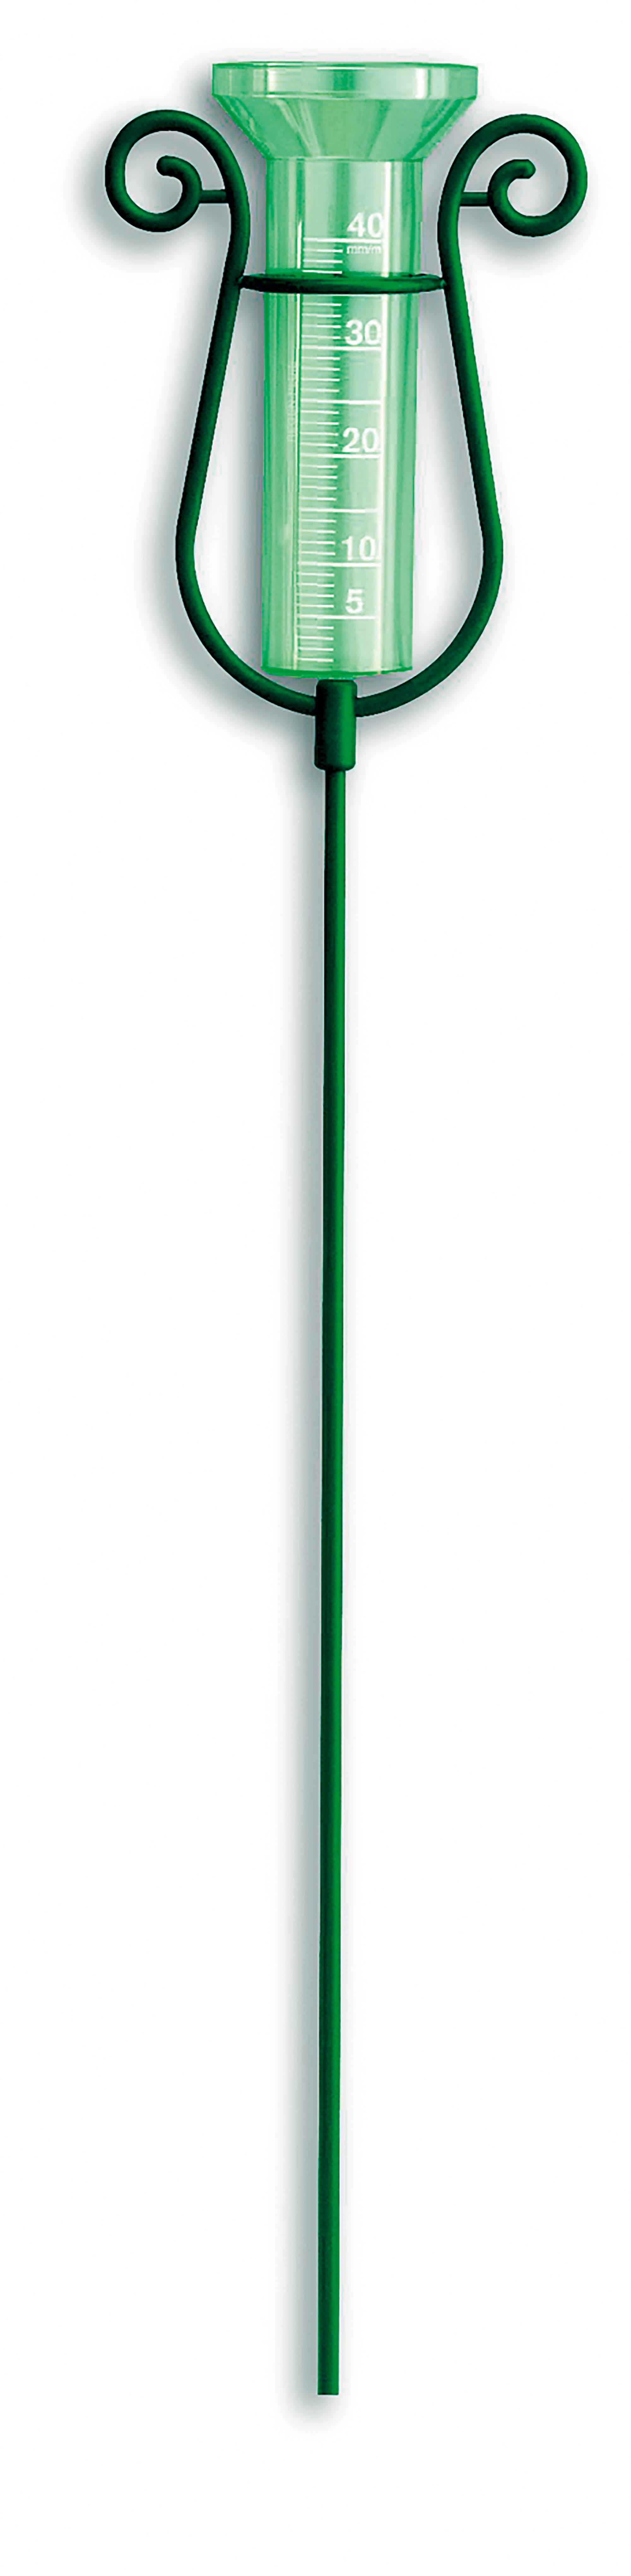 Regenmesser, Kunststoff mit grünem Metallstab Maße: 740x140 mm